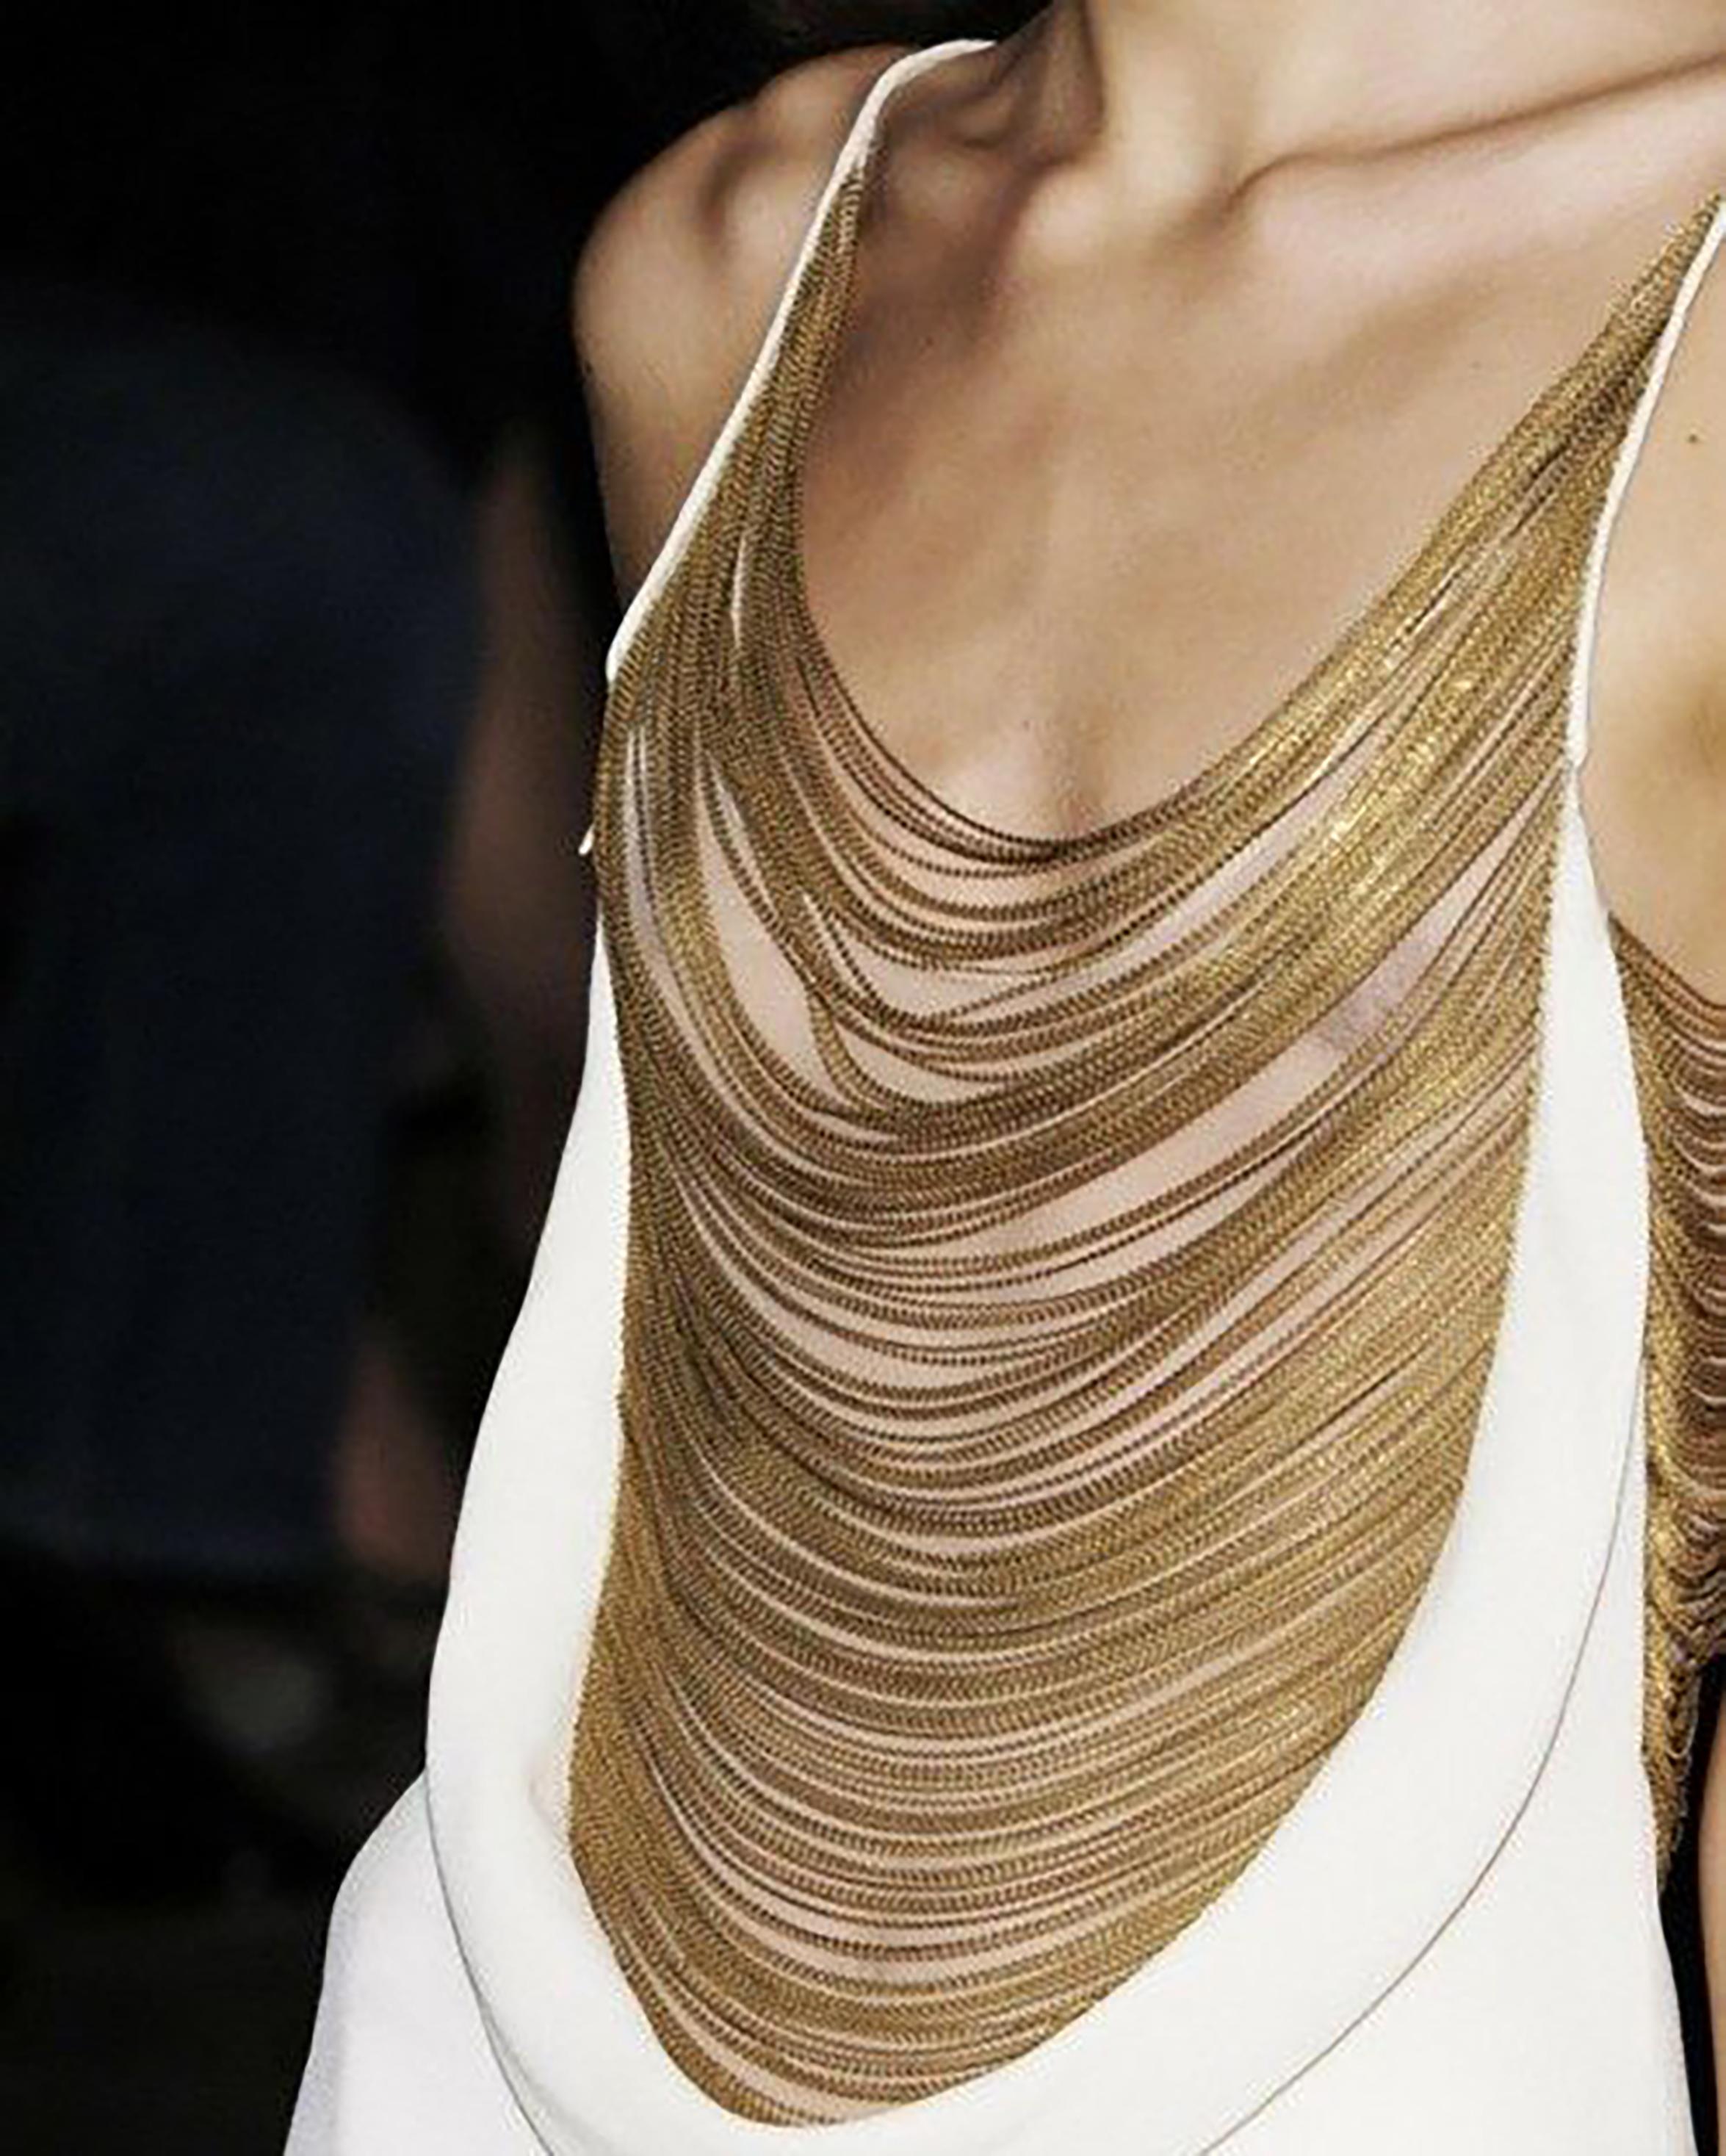 Women's S/S 2006 Alexander McQueen Gold Chain White Gown